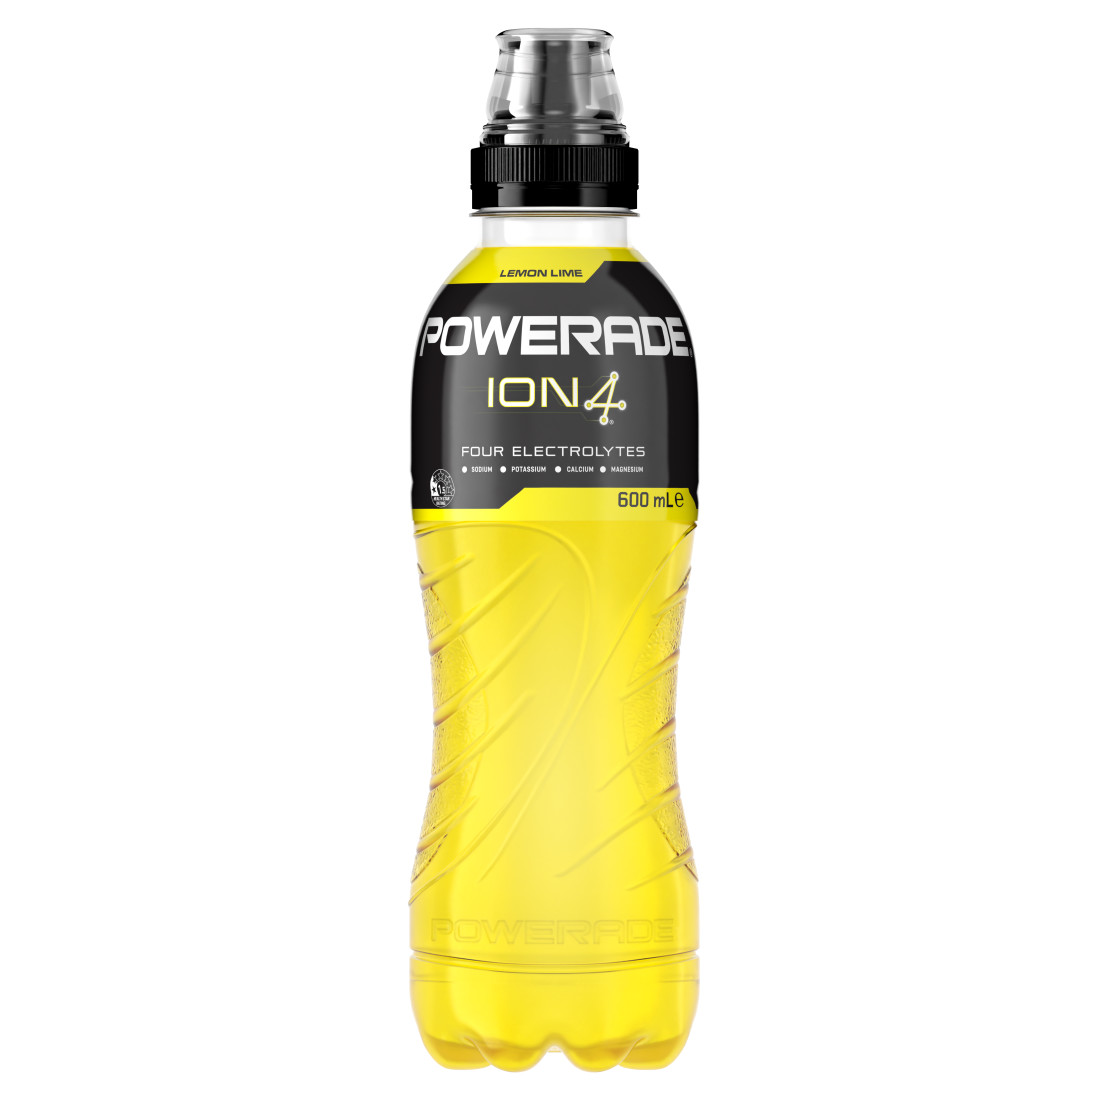 Powerade ION4 Lemon Lime bottle